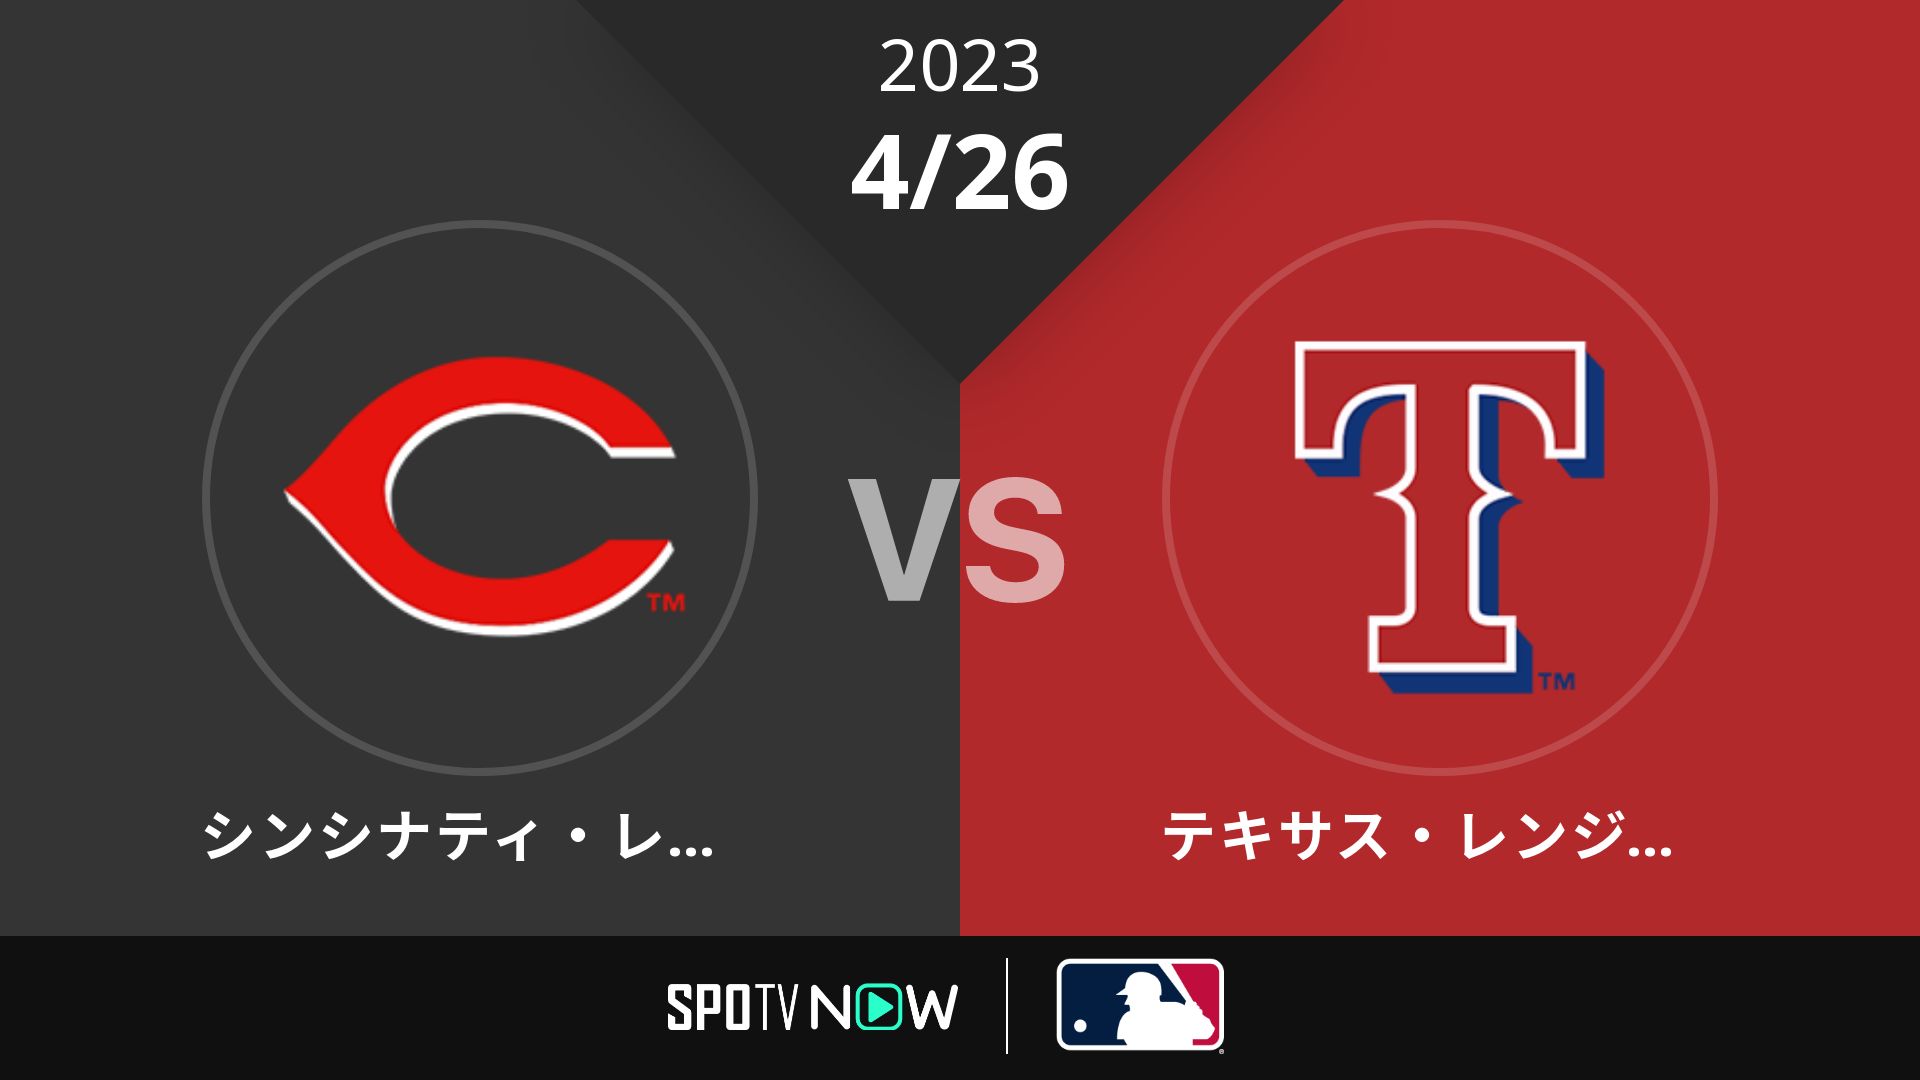 2023/4/26 レッズ vs レンジャーズ [MLB]